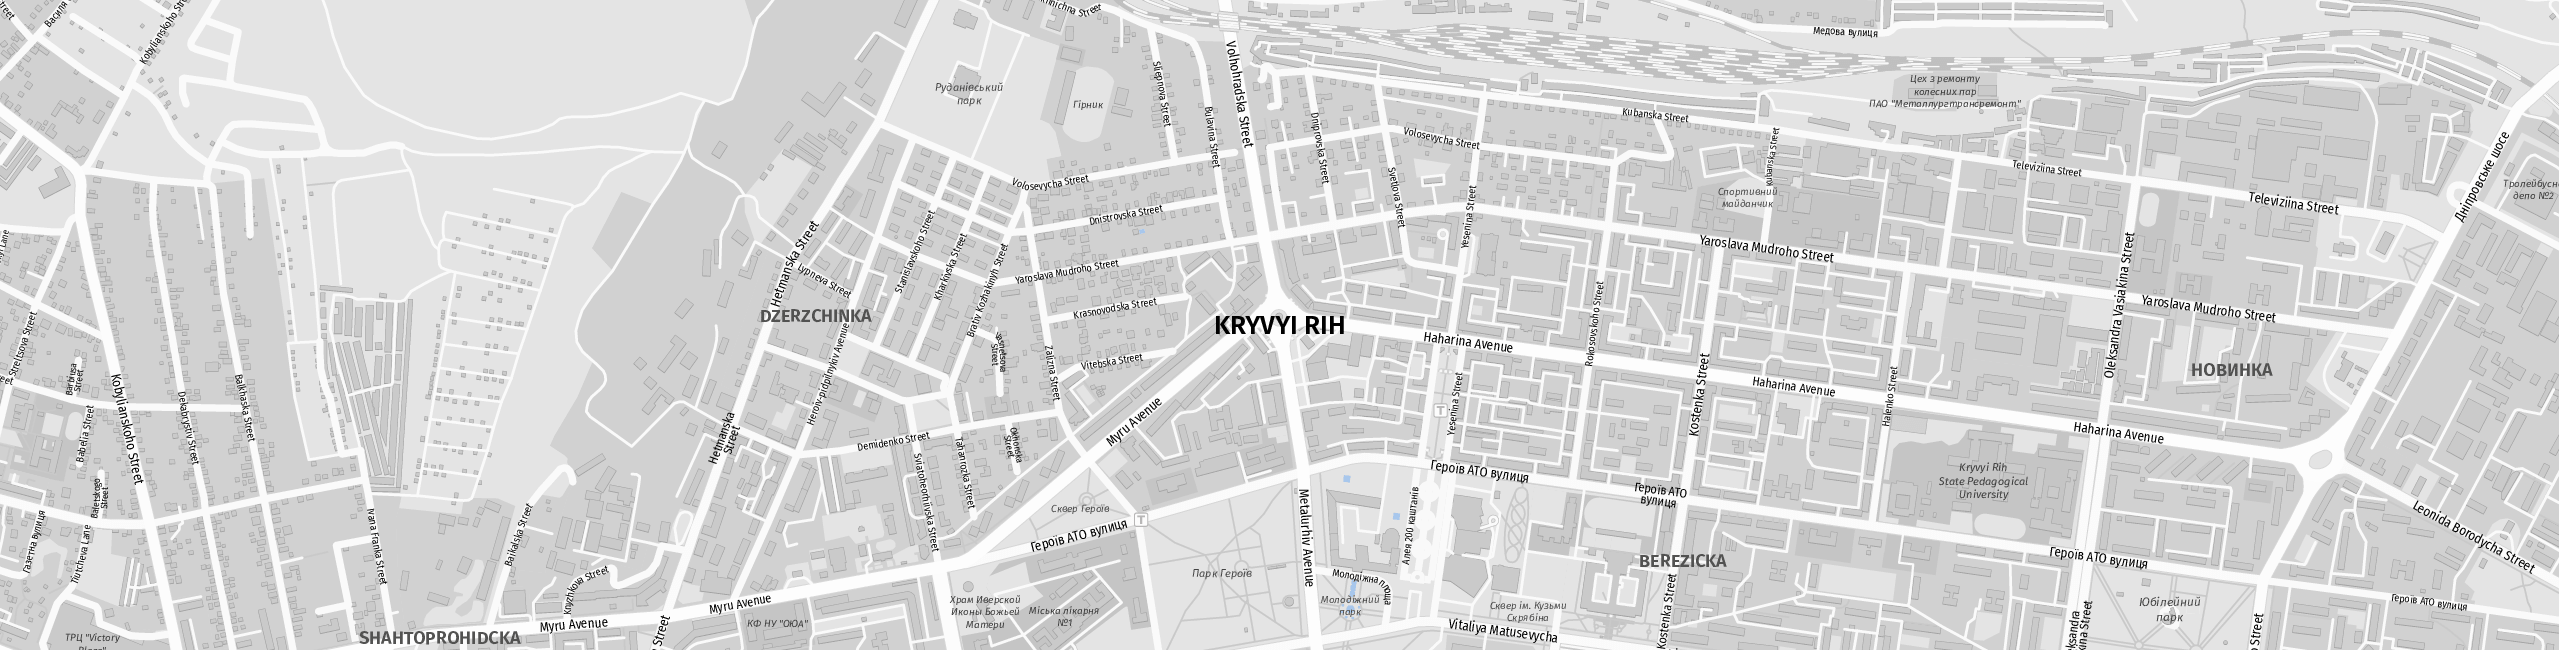 Stadtplan Kryvyi Rih zum Downloaden.